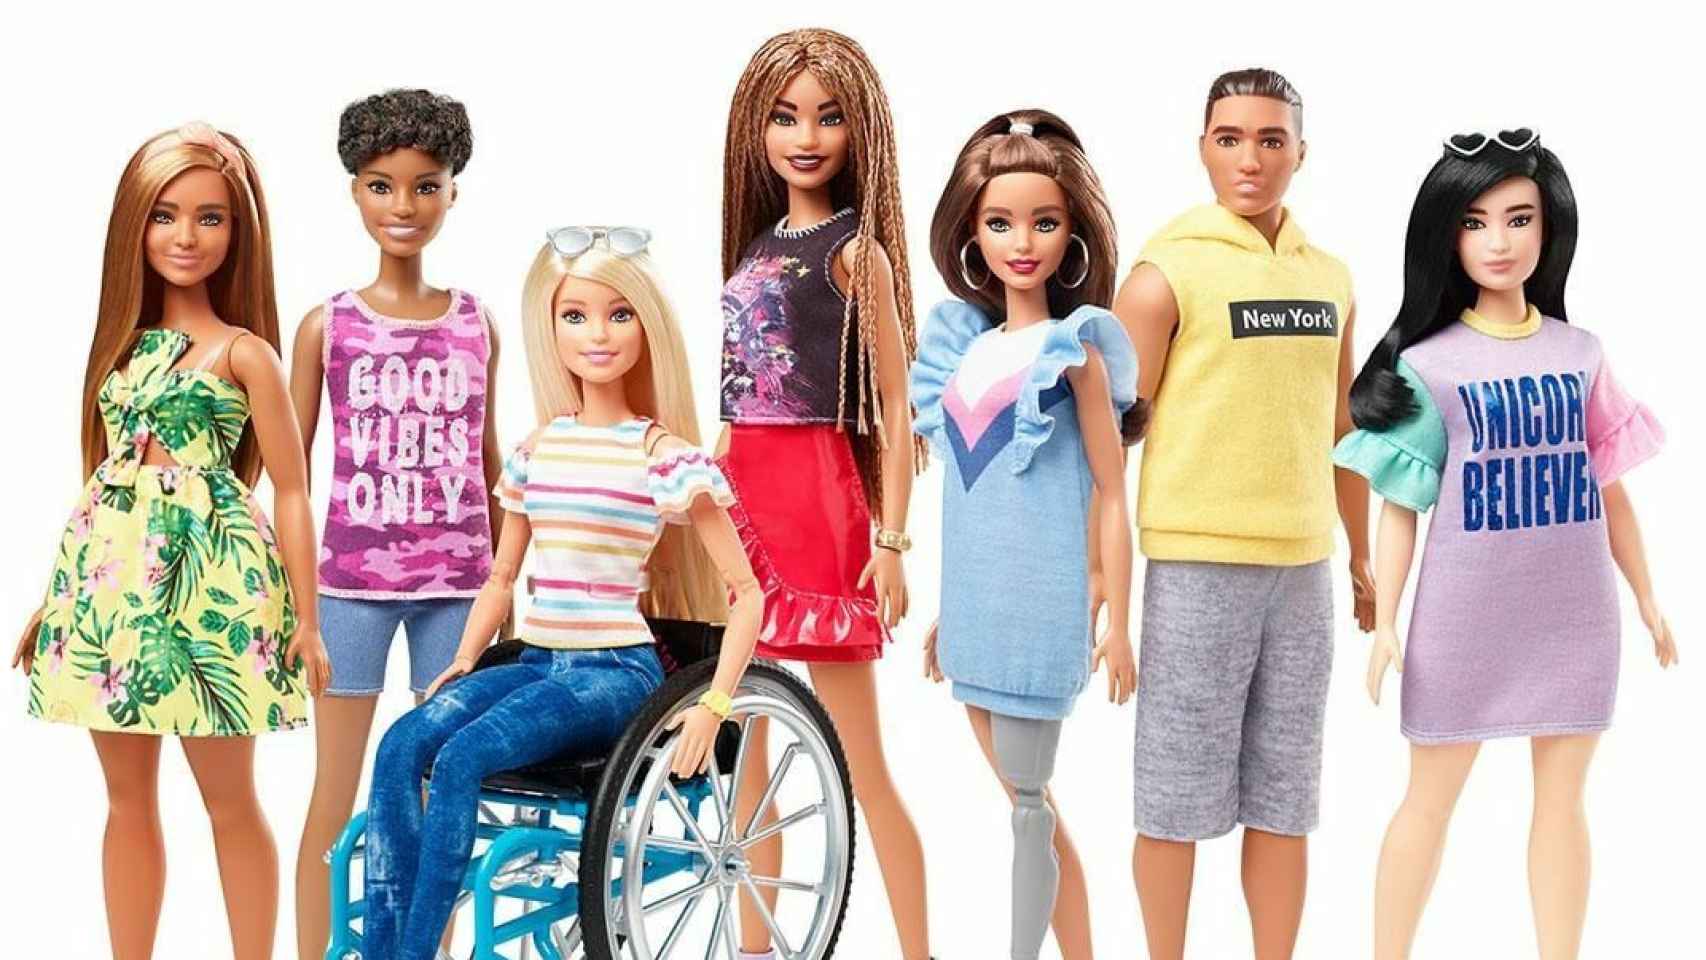 Barbie rodeada de sus amigos en una imagen de Mattel.